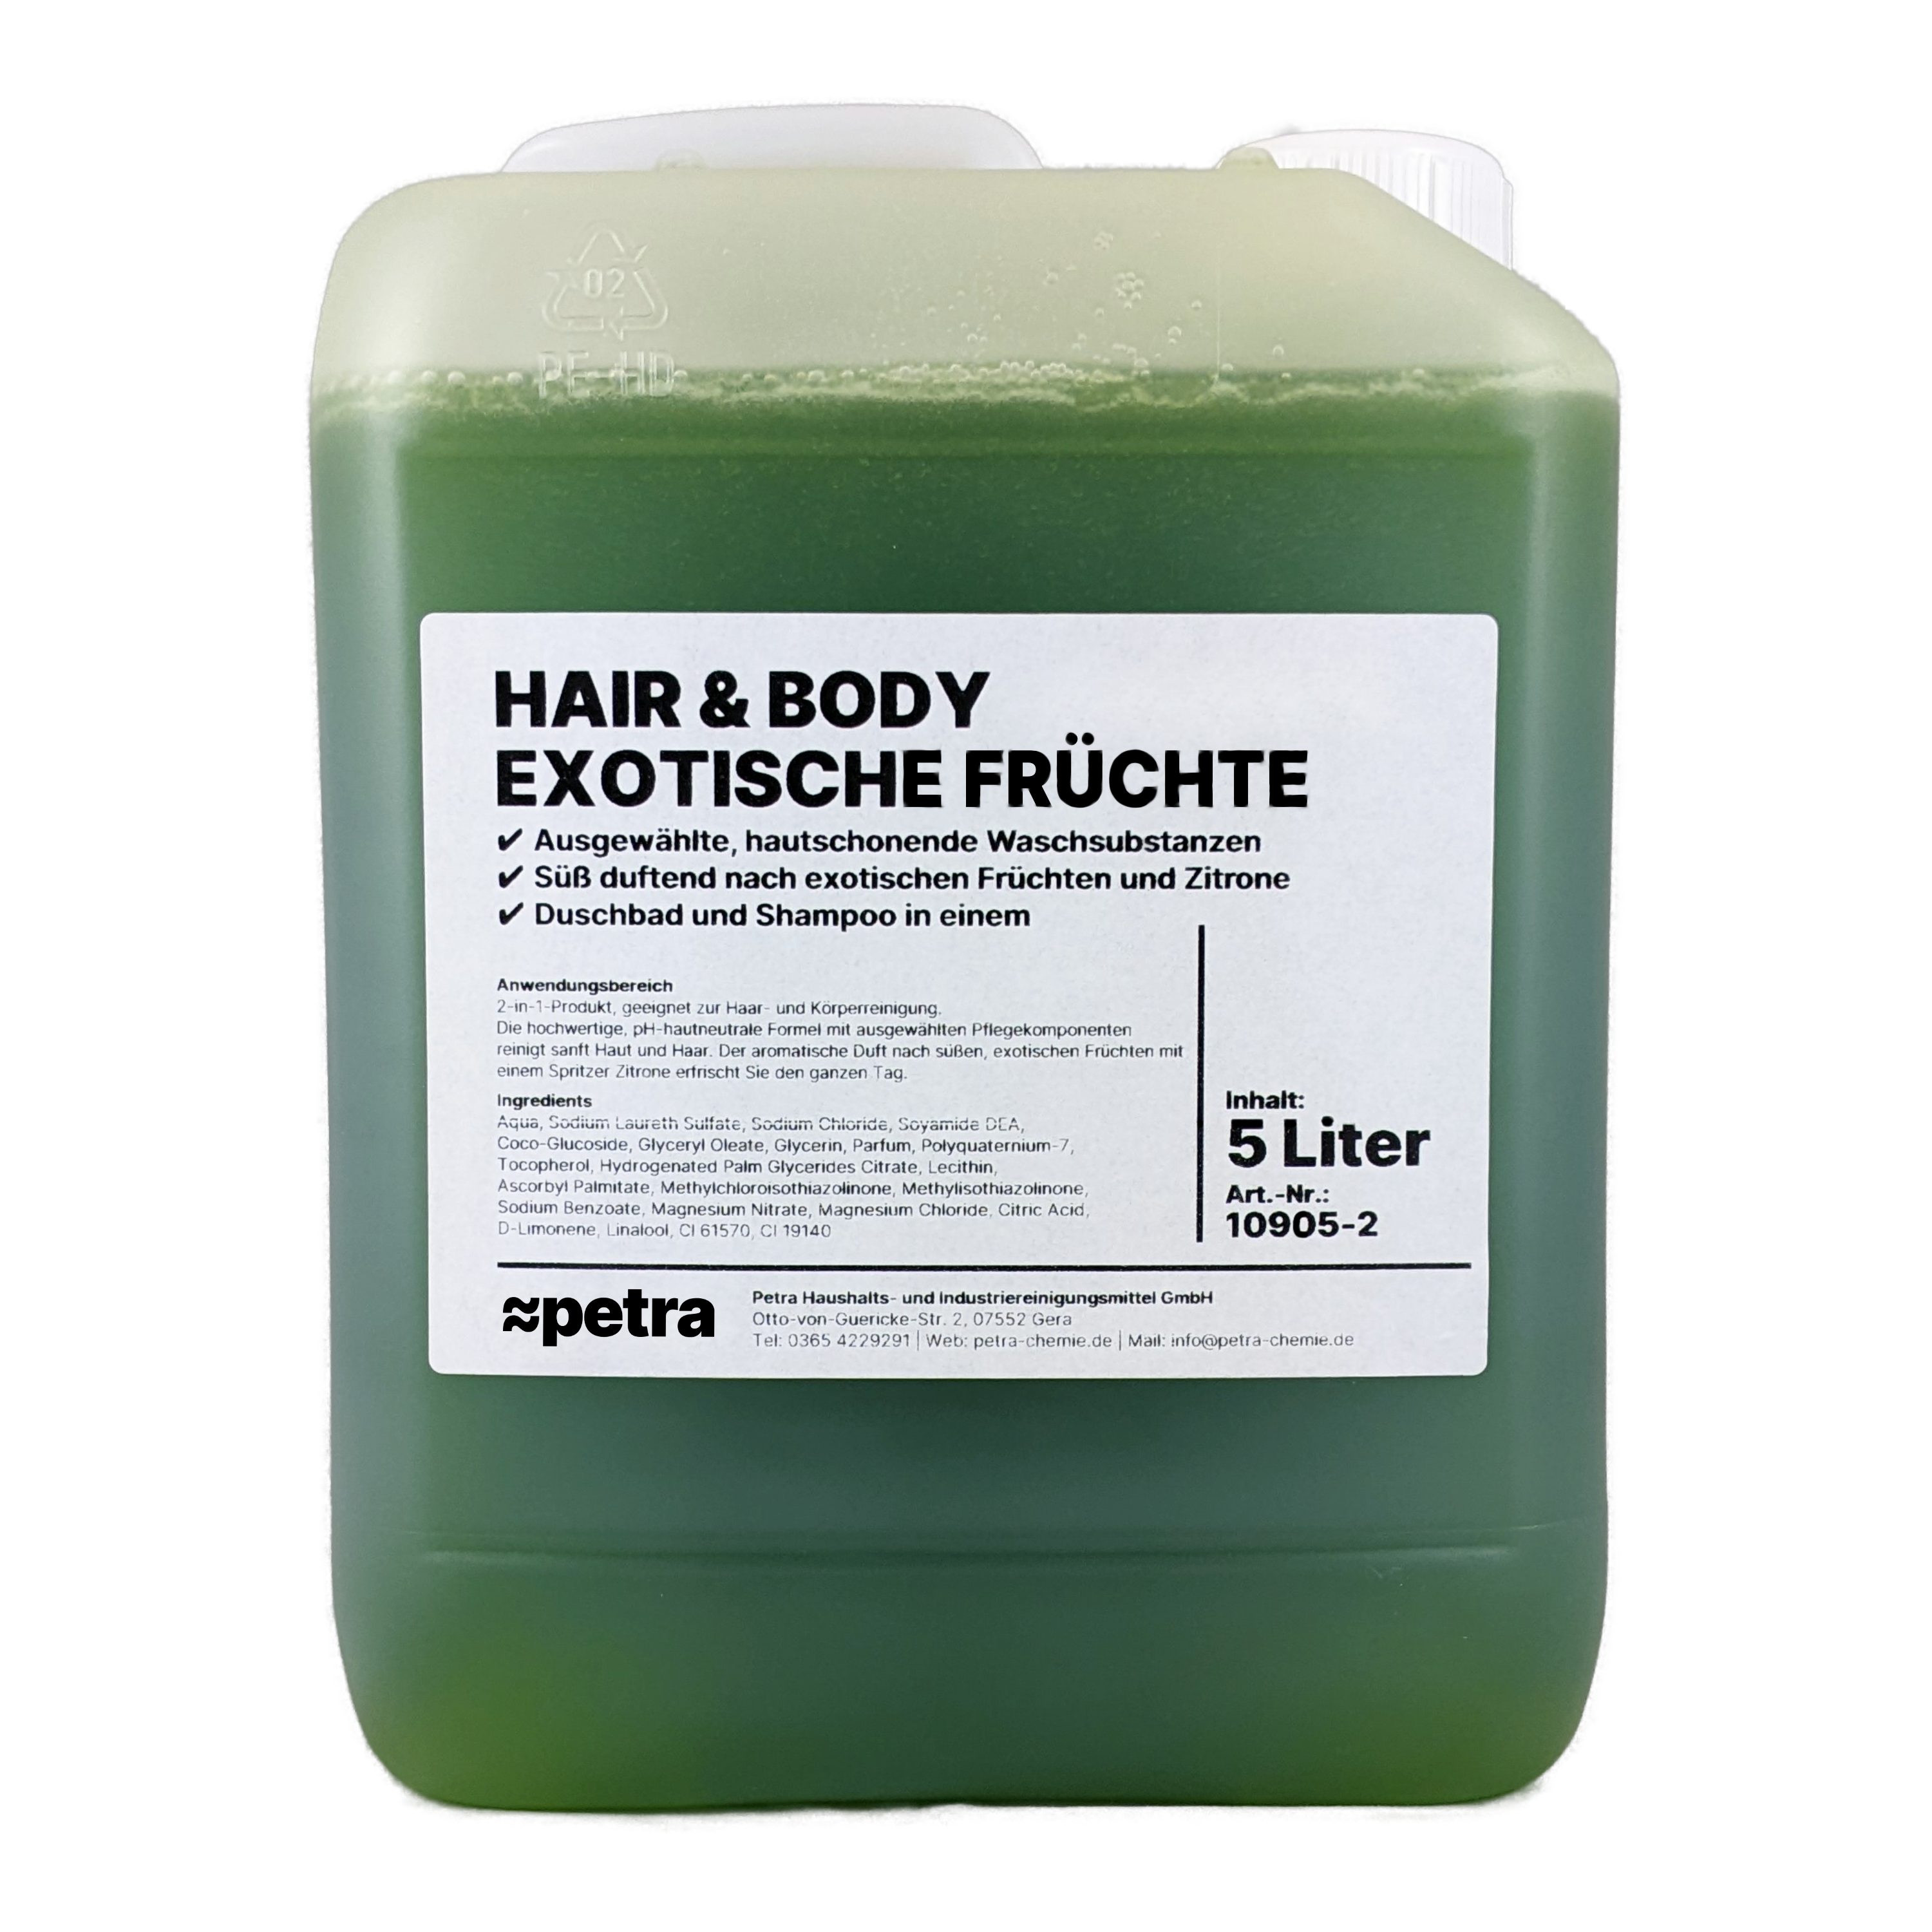 ≈petra Duschgel Hair Körper Shampoo Duschgel Früchte Exotische und Liter Kanister], für & Body 2-in-1 Haar [2x5 und